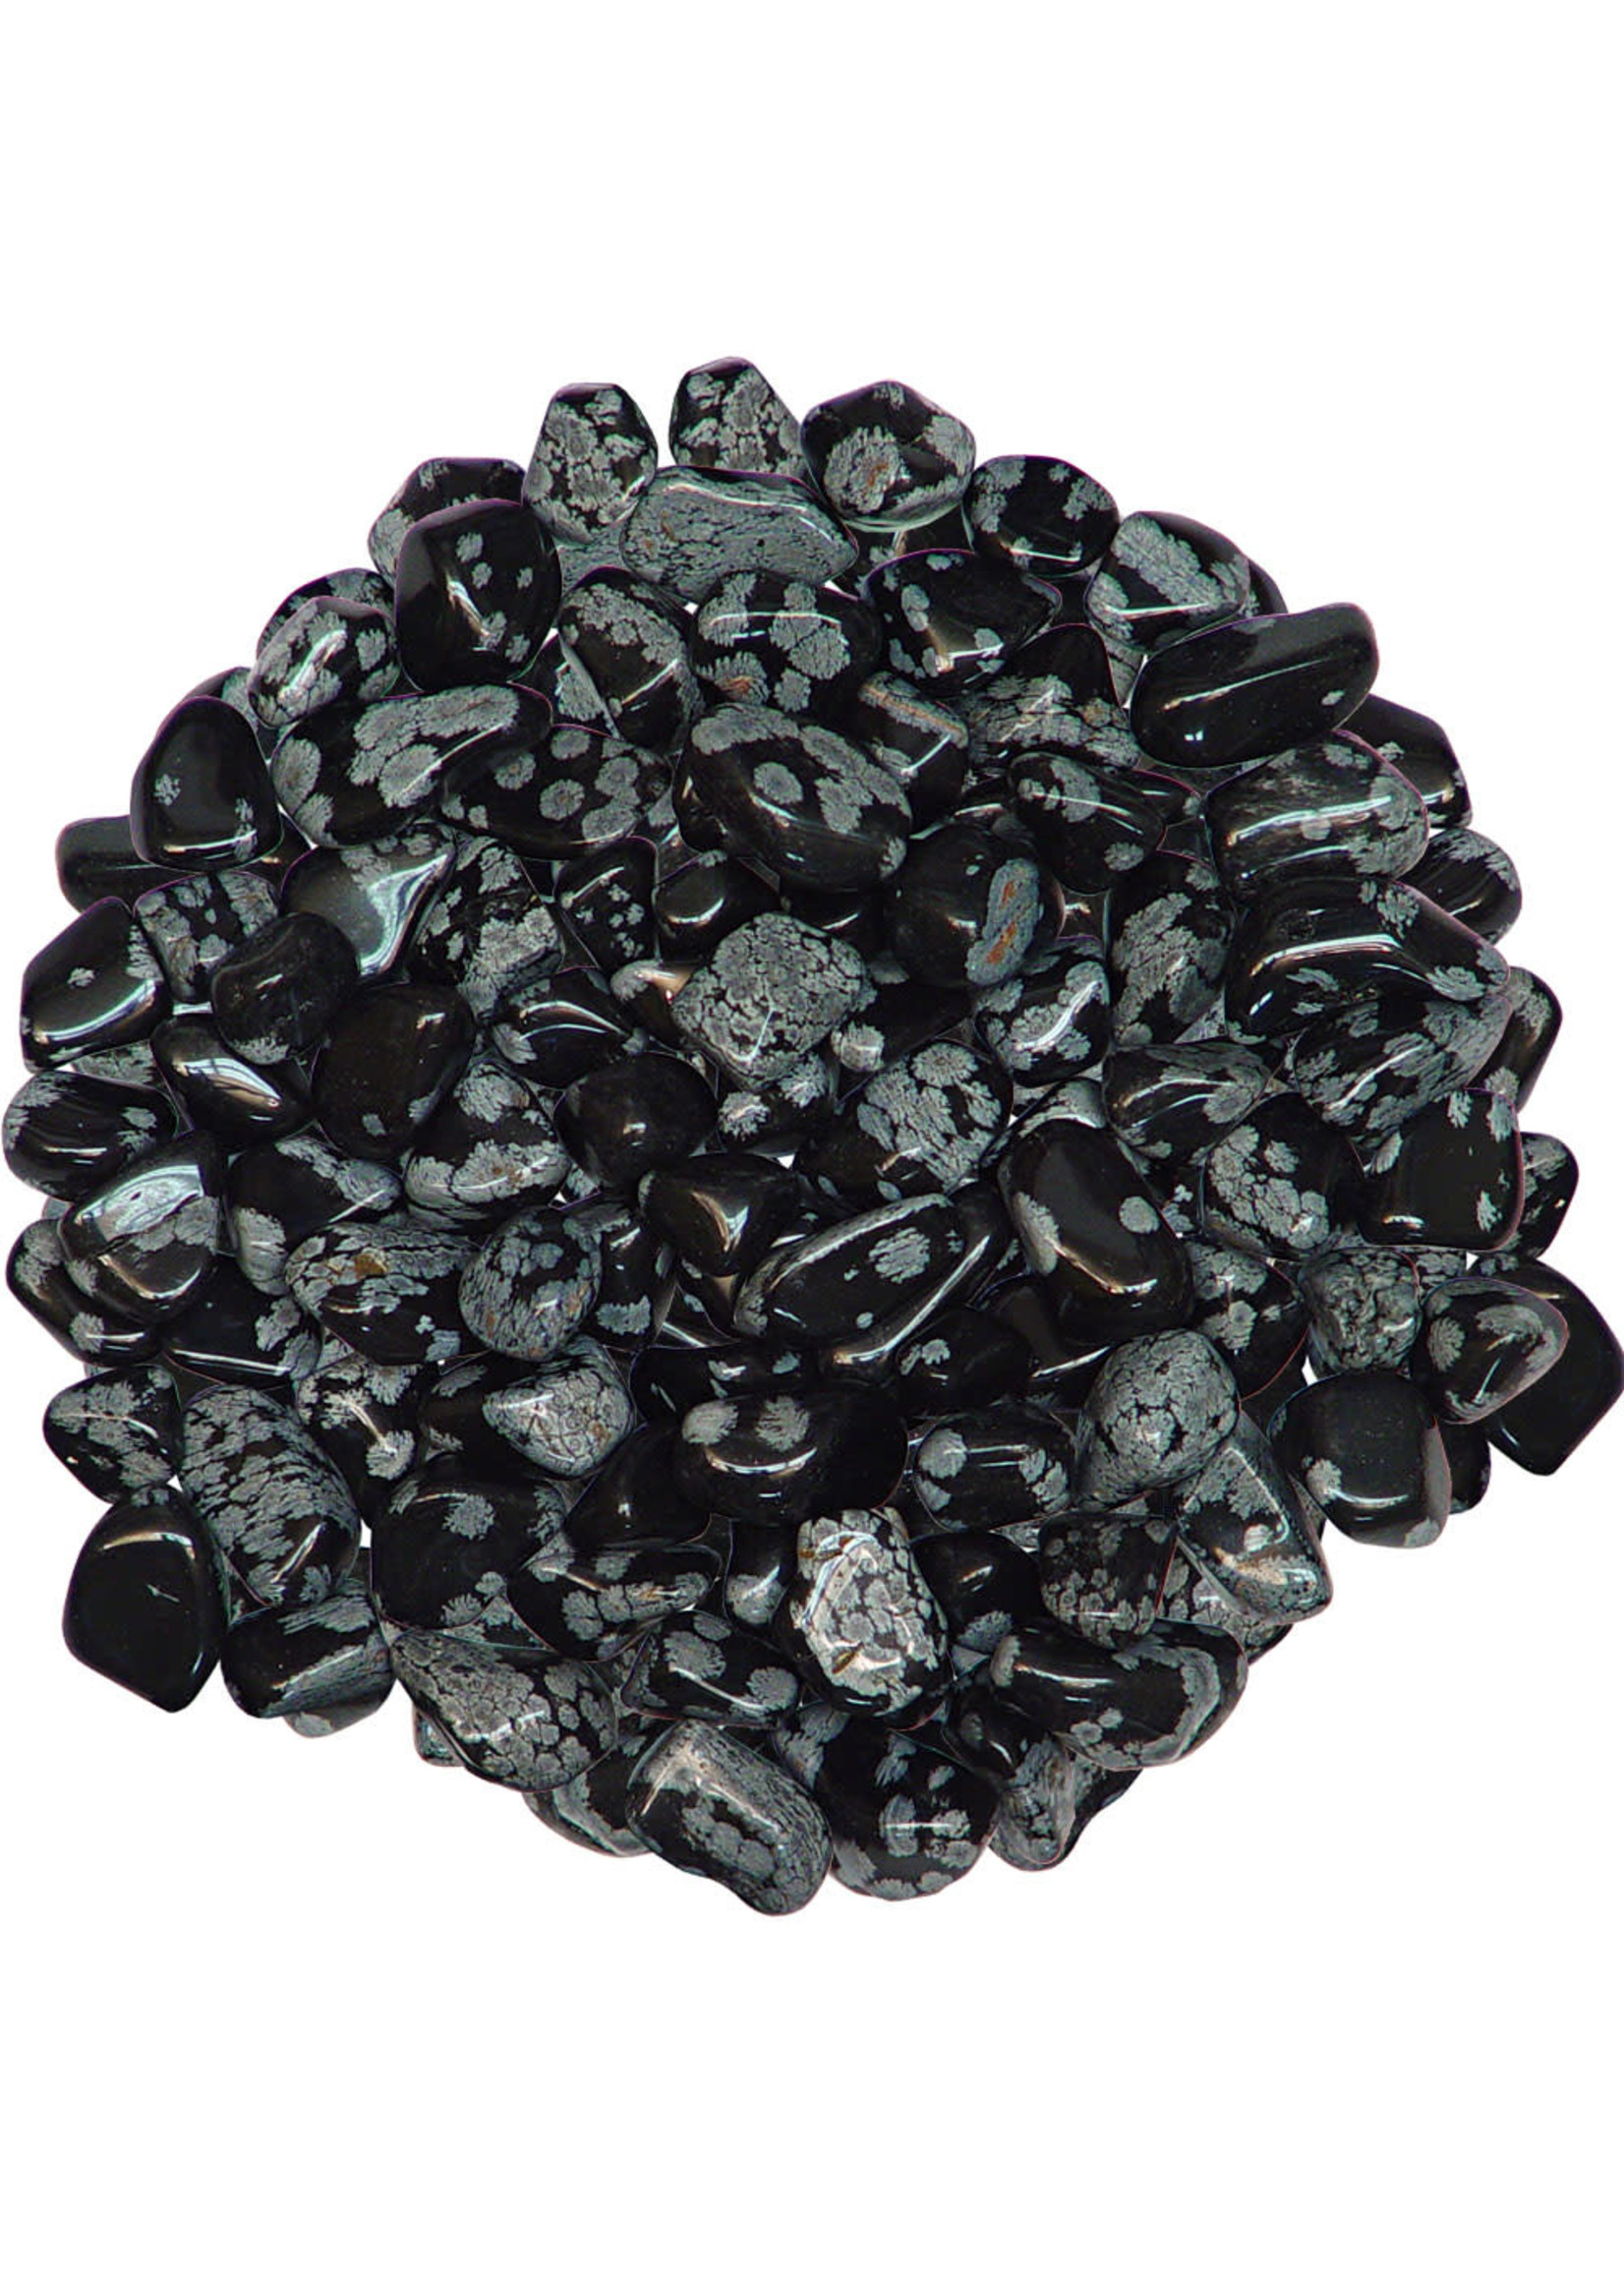 Obsidian: Snowflake - Tumbled